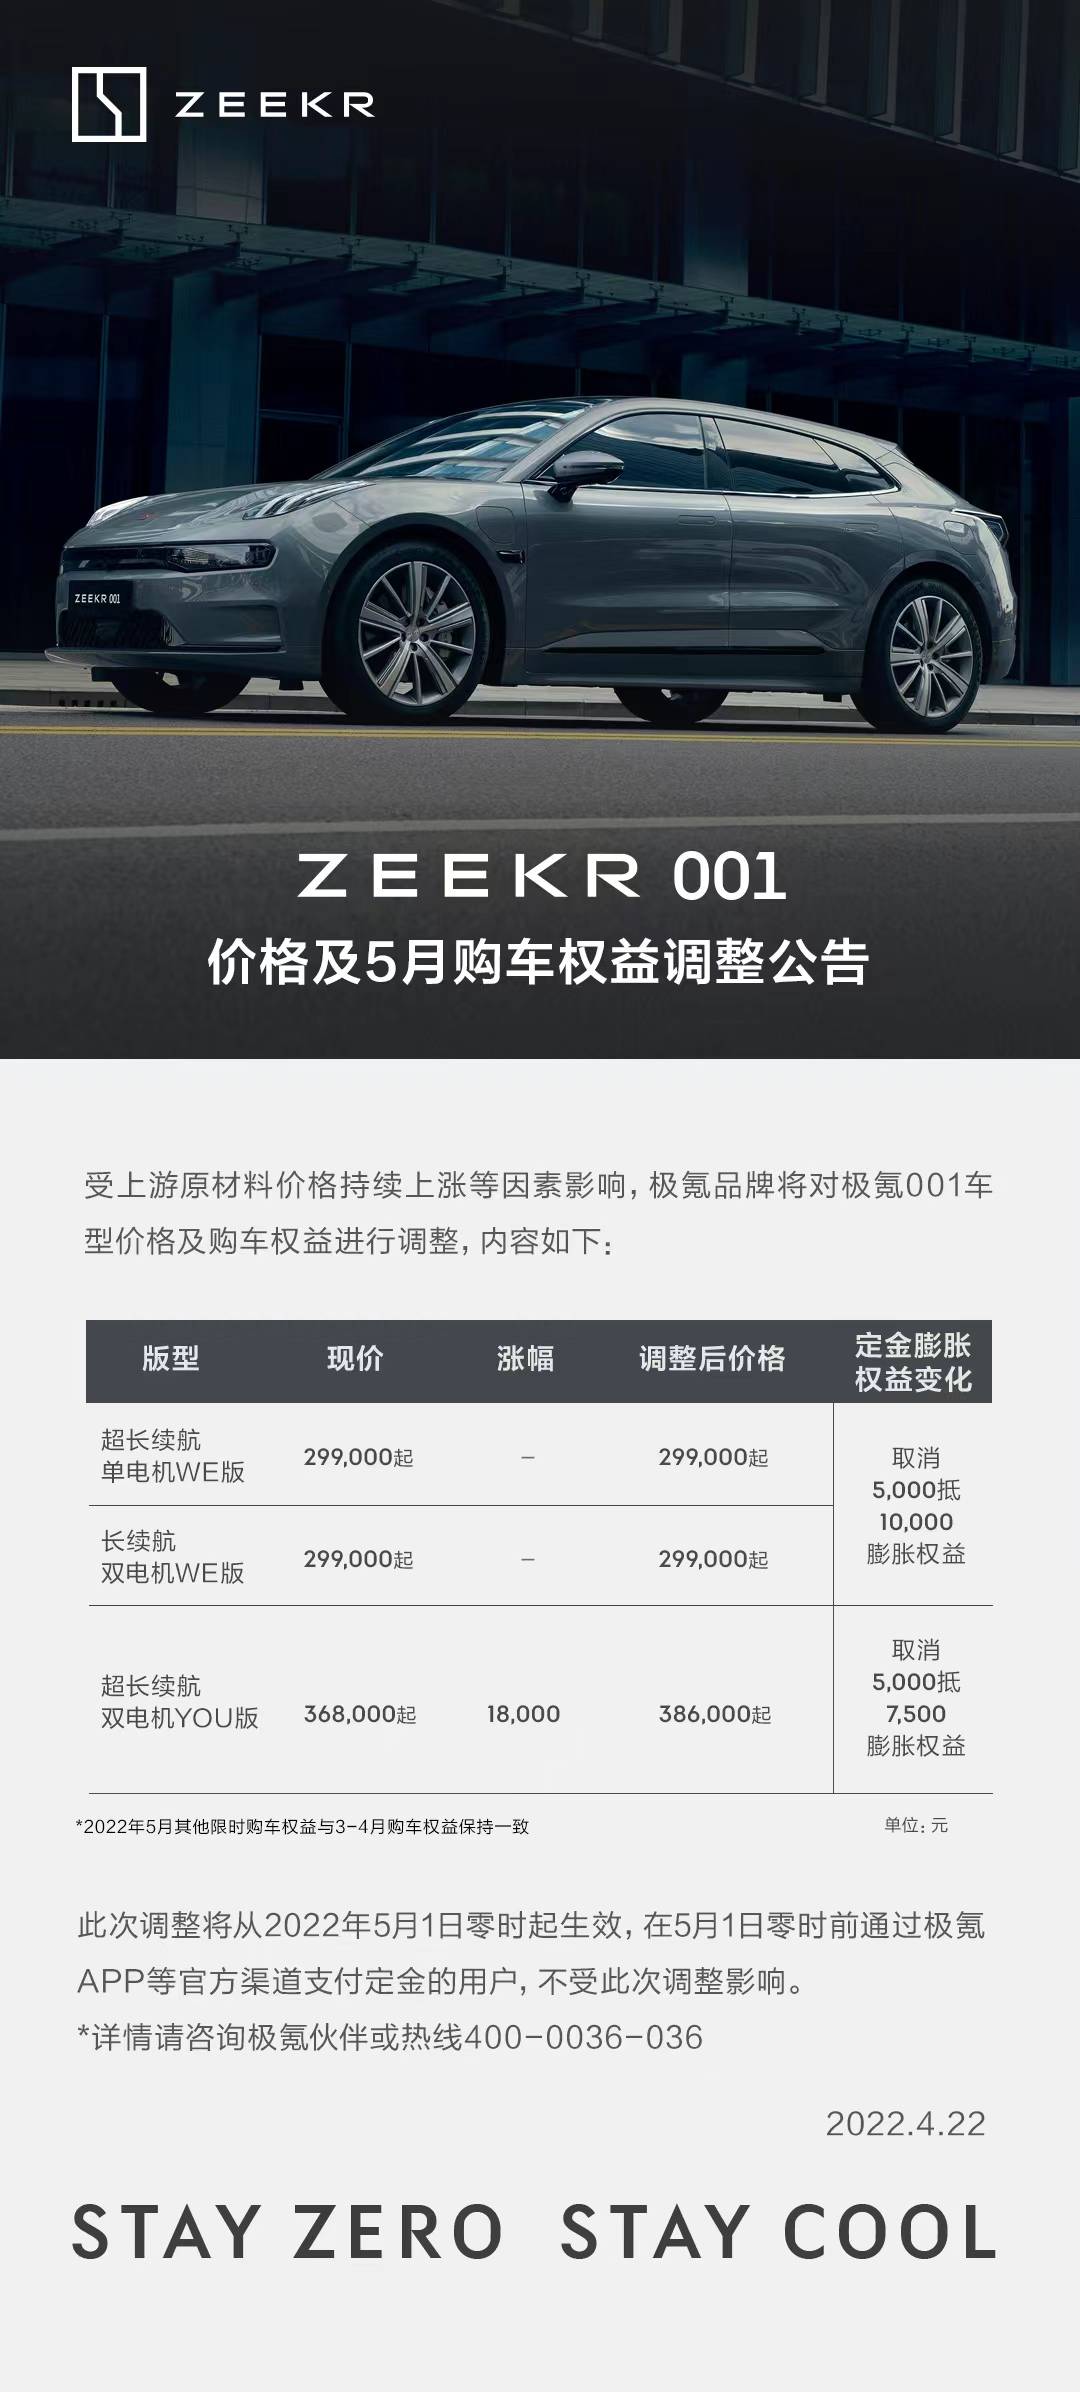 zeekr2 - Xu Jiayin ha definito “bella” dopo aver sperimentato Hengchi 5 / Musk ha elogiato il CEO di Volkswagen dopo essere stato elogiato / Wuling ha iniziato a vendere sedie